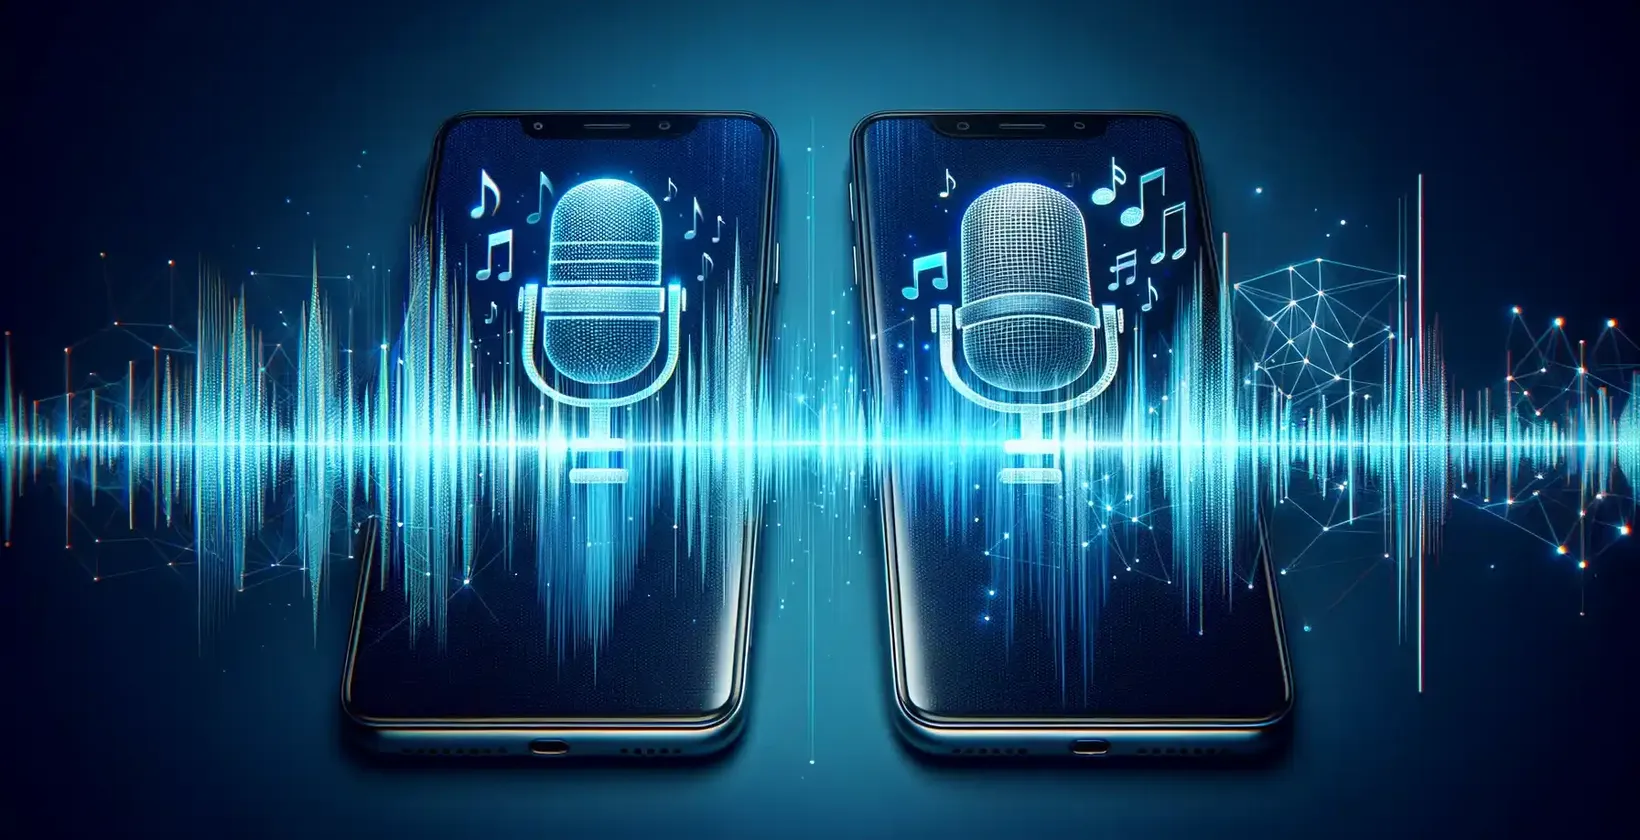 Dva pametna telefona z živahnimi ikonami mikrofonov sredi digitalnih valovnih oblik, ki simbolizirajo storitve prepisovanja